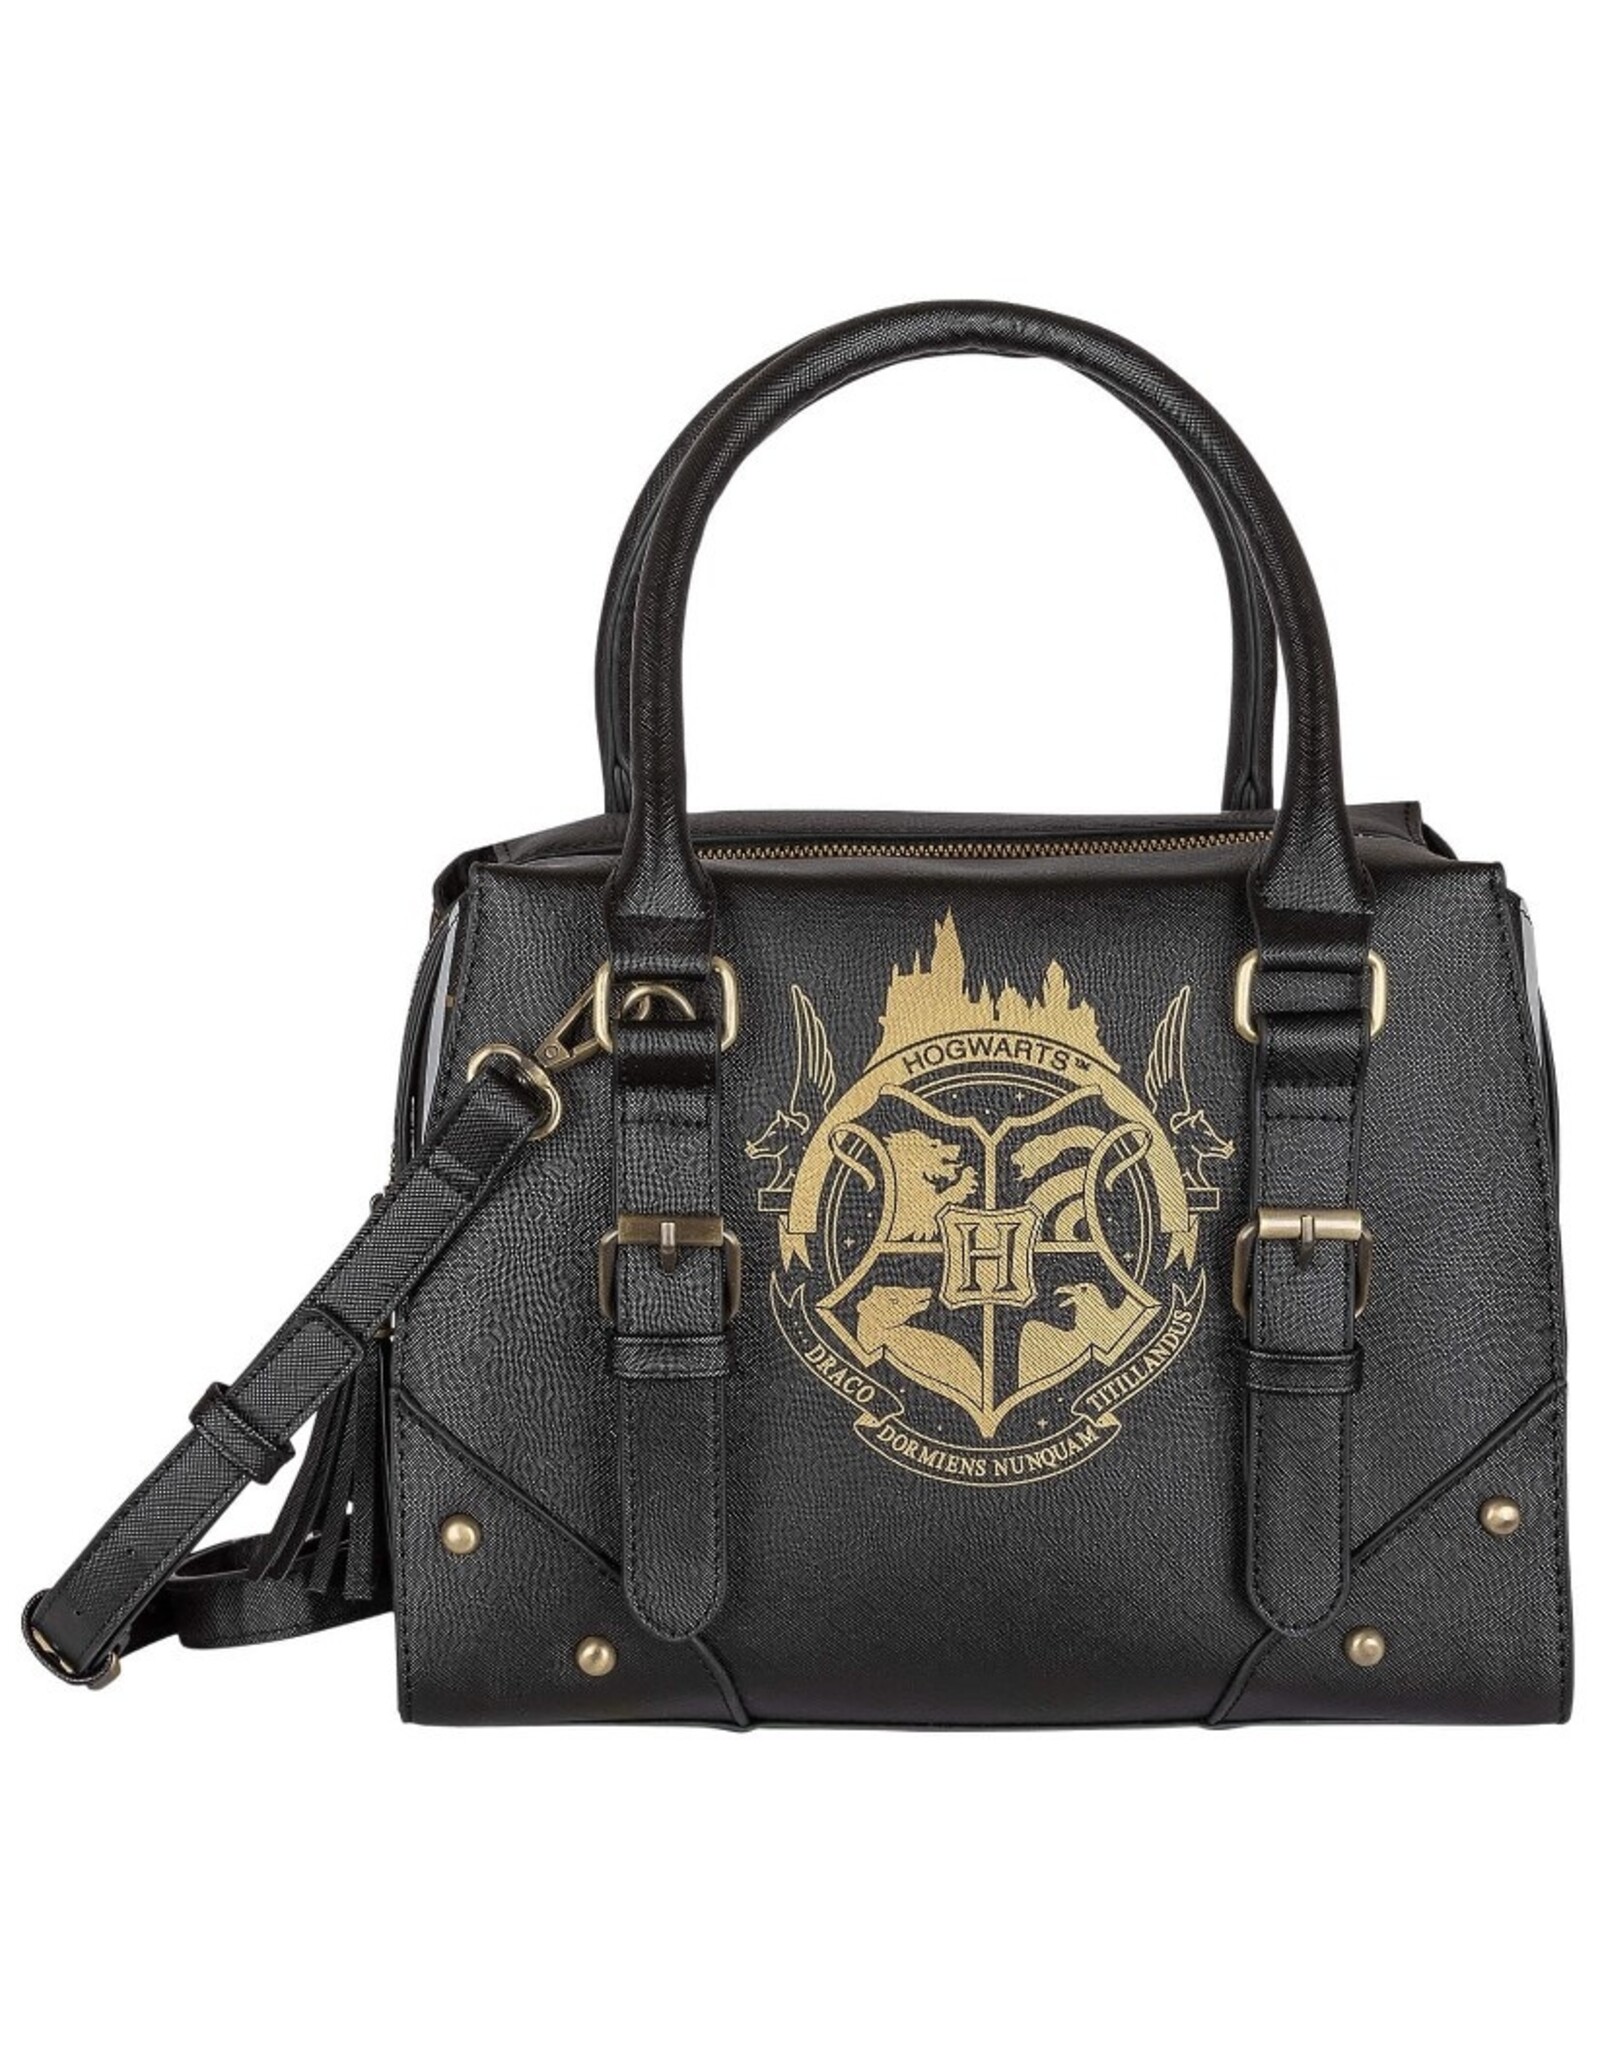 Harry Potter Harry Potter bags - Harry Potter Hogwarts Crest Premium handbag